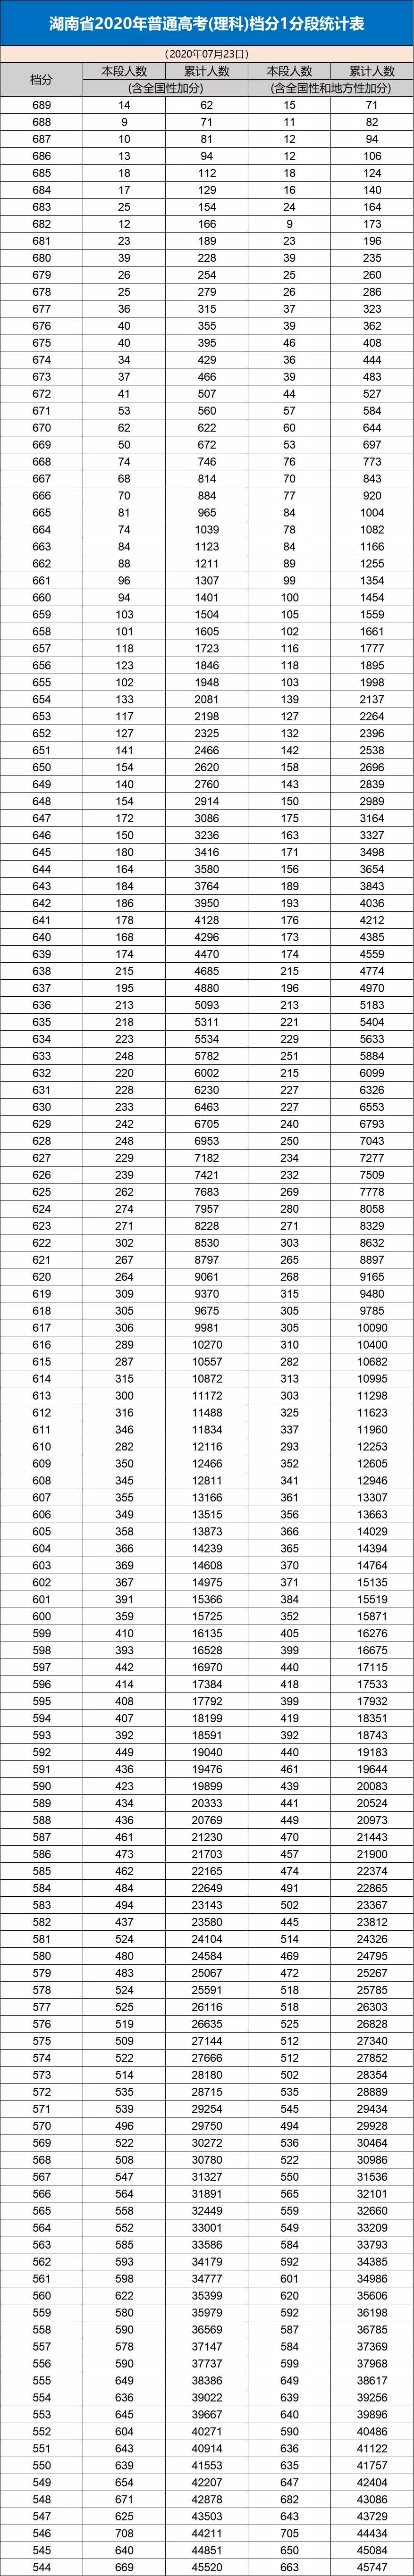 八省联考成绩对照:湖南2020高考理工类一分一段表